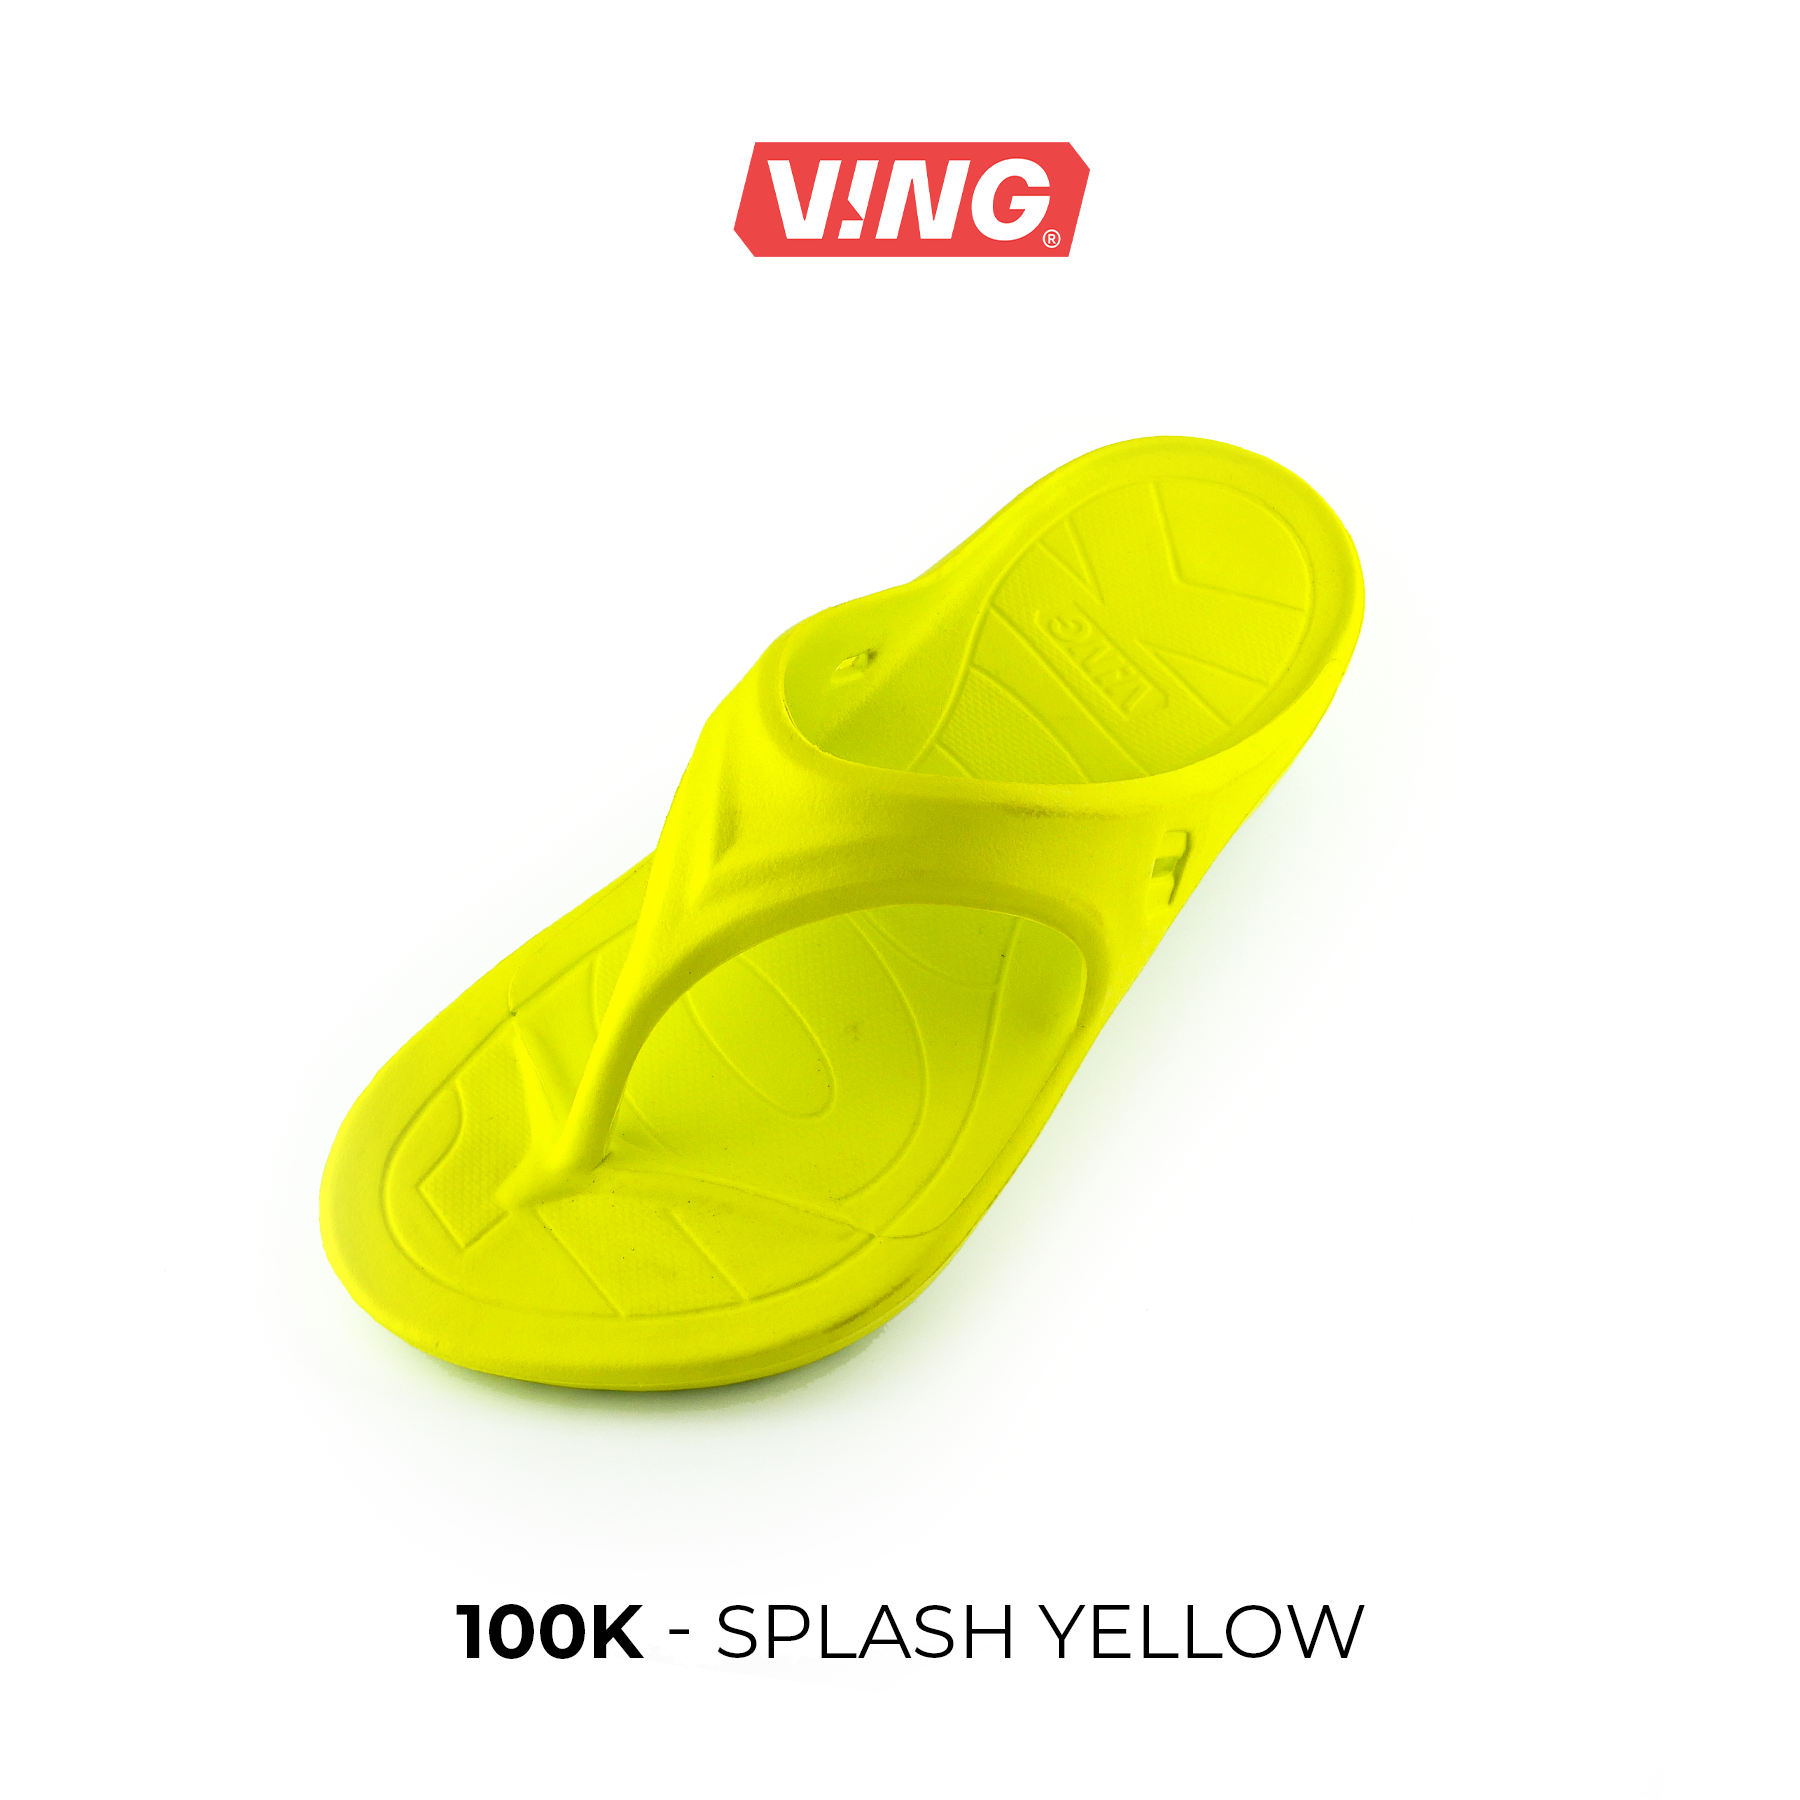 รองเท้าแตะวิ่งมาราธอน VING รุ่น 100K - สีเหลือง Splash Yellow (รวมสายรัดข้อเท้า เลือกสีได้) Running Sandals - รองเท้าแตะสุขภาพ [ส่งฟรี]